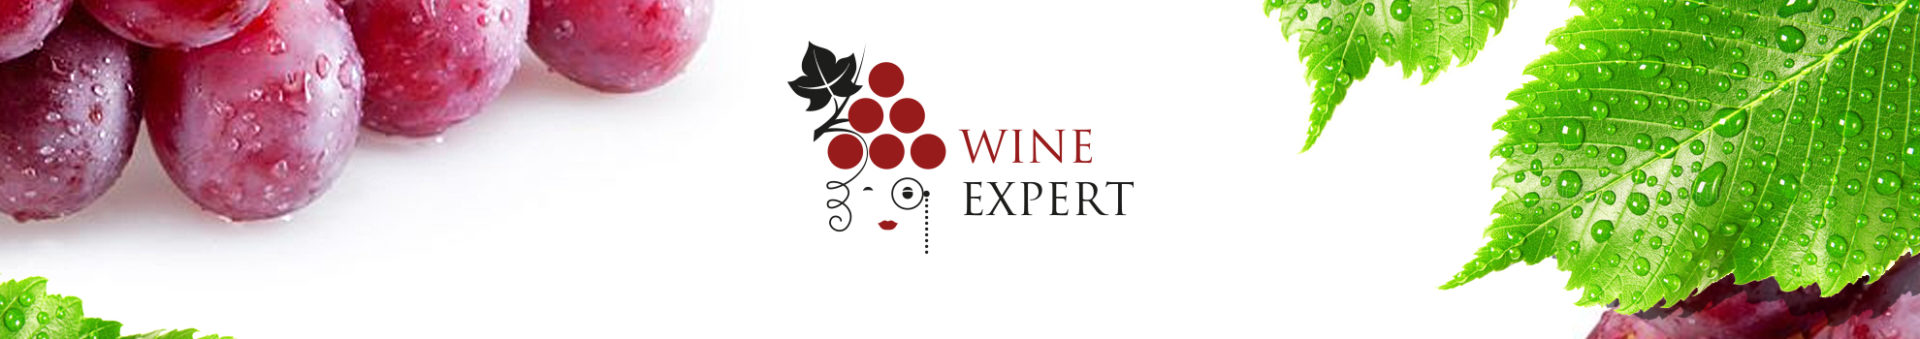 Разработан логотип для винного эксперта